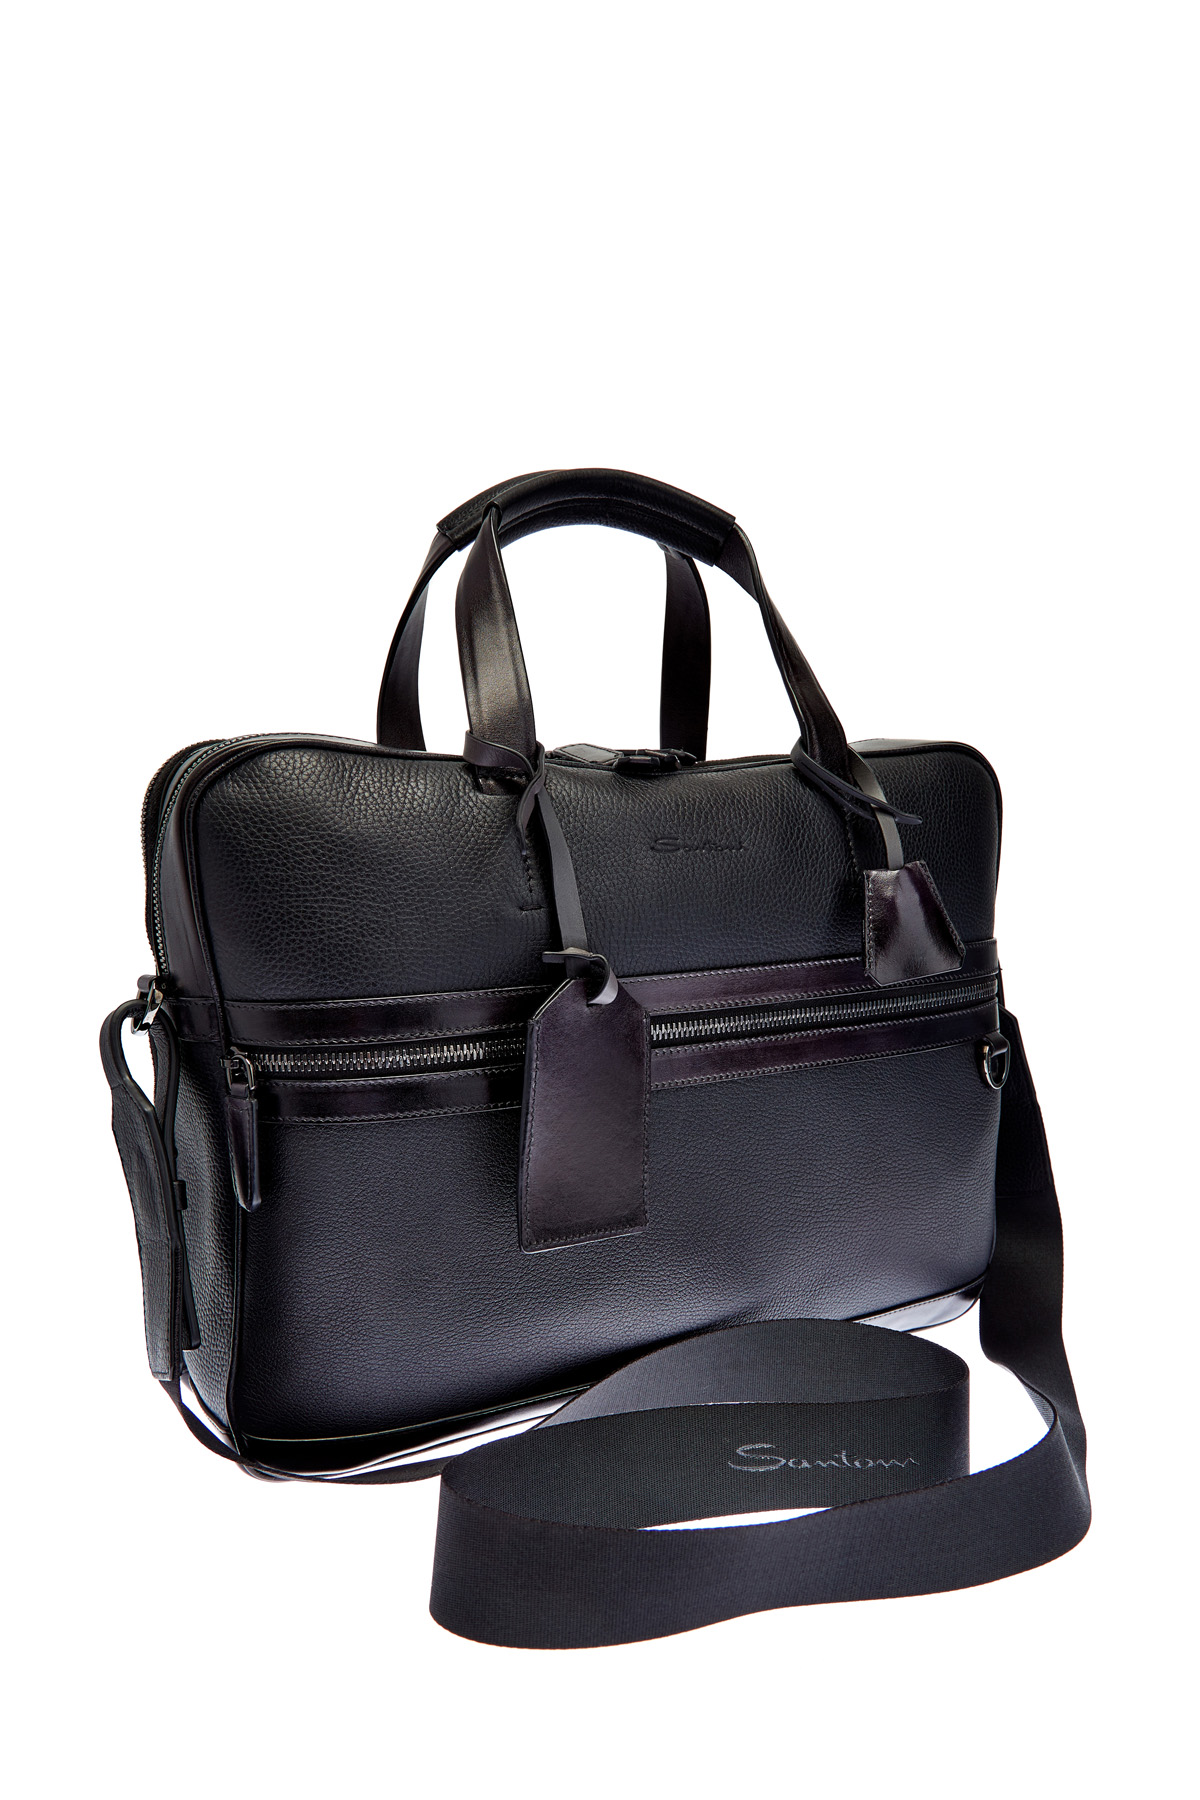 Кожаная сумка с карманом для бумаг А4 и съемным плечевым ремнем SANTONI, цвет черный, размер 36;38.5 - фото 3